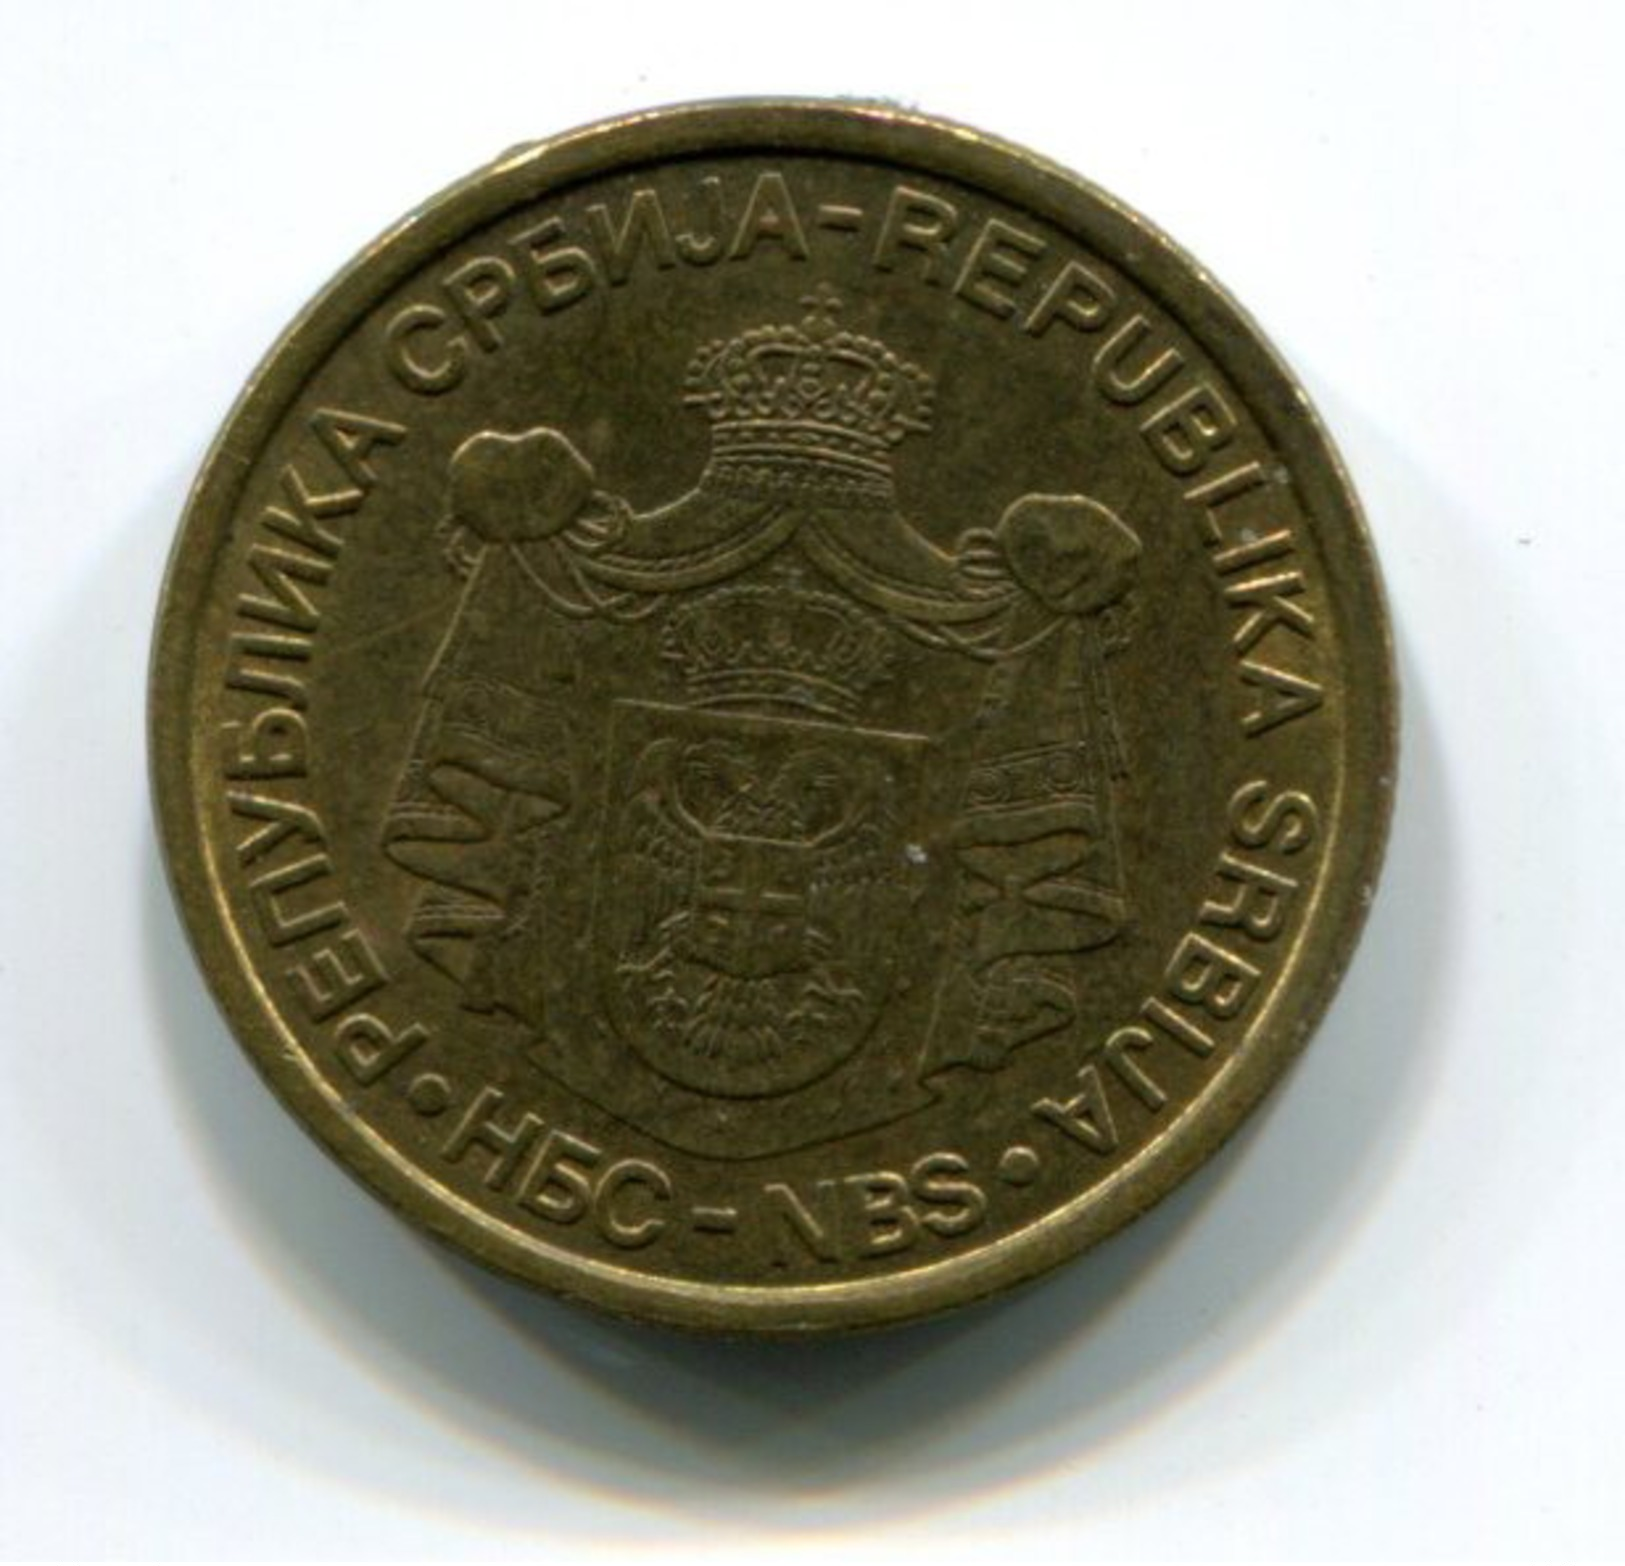 2010 Serbia 1 Dinar Coin - Serbia